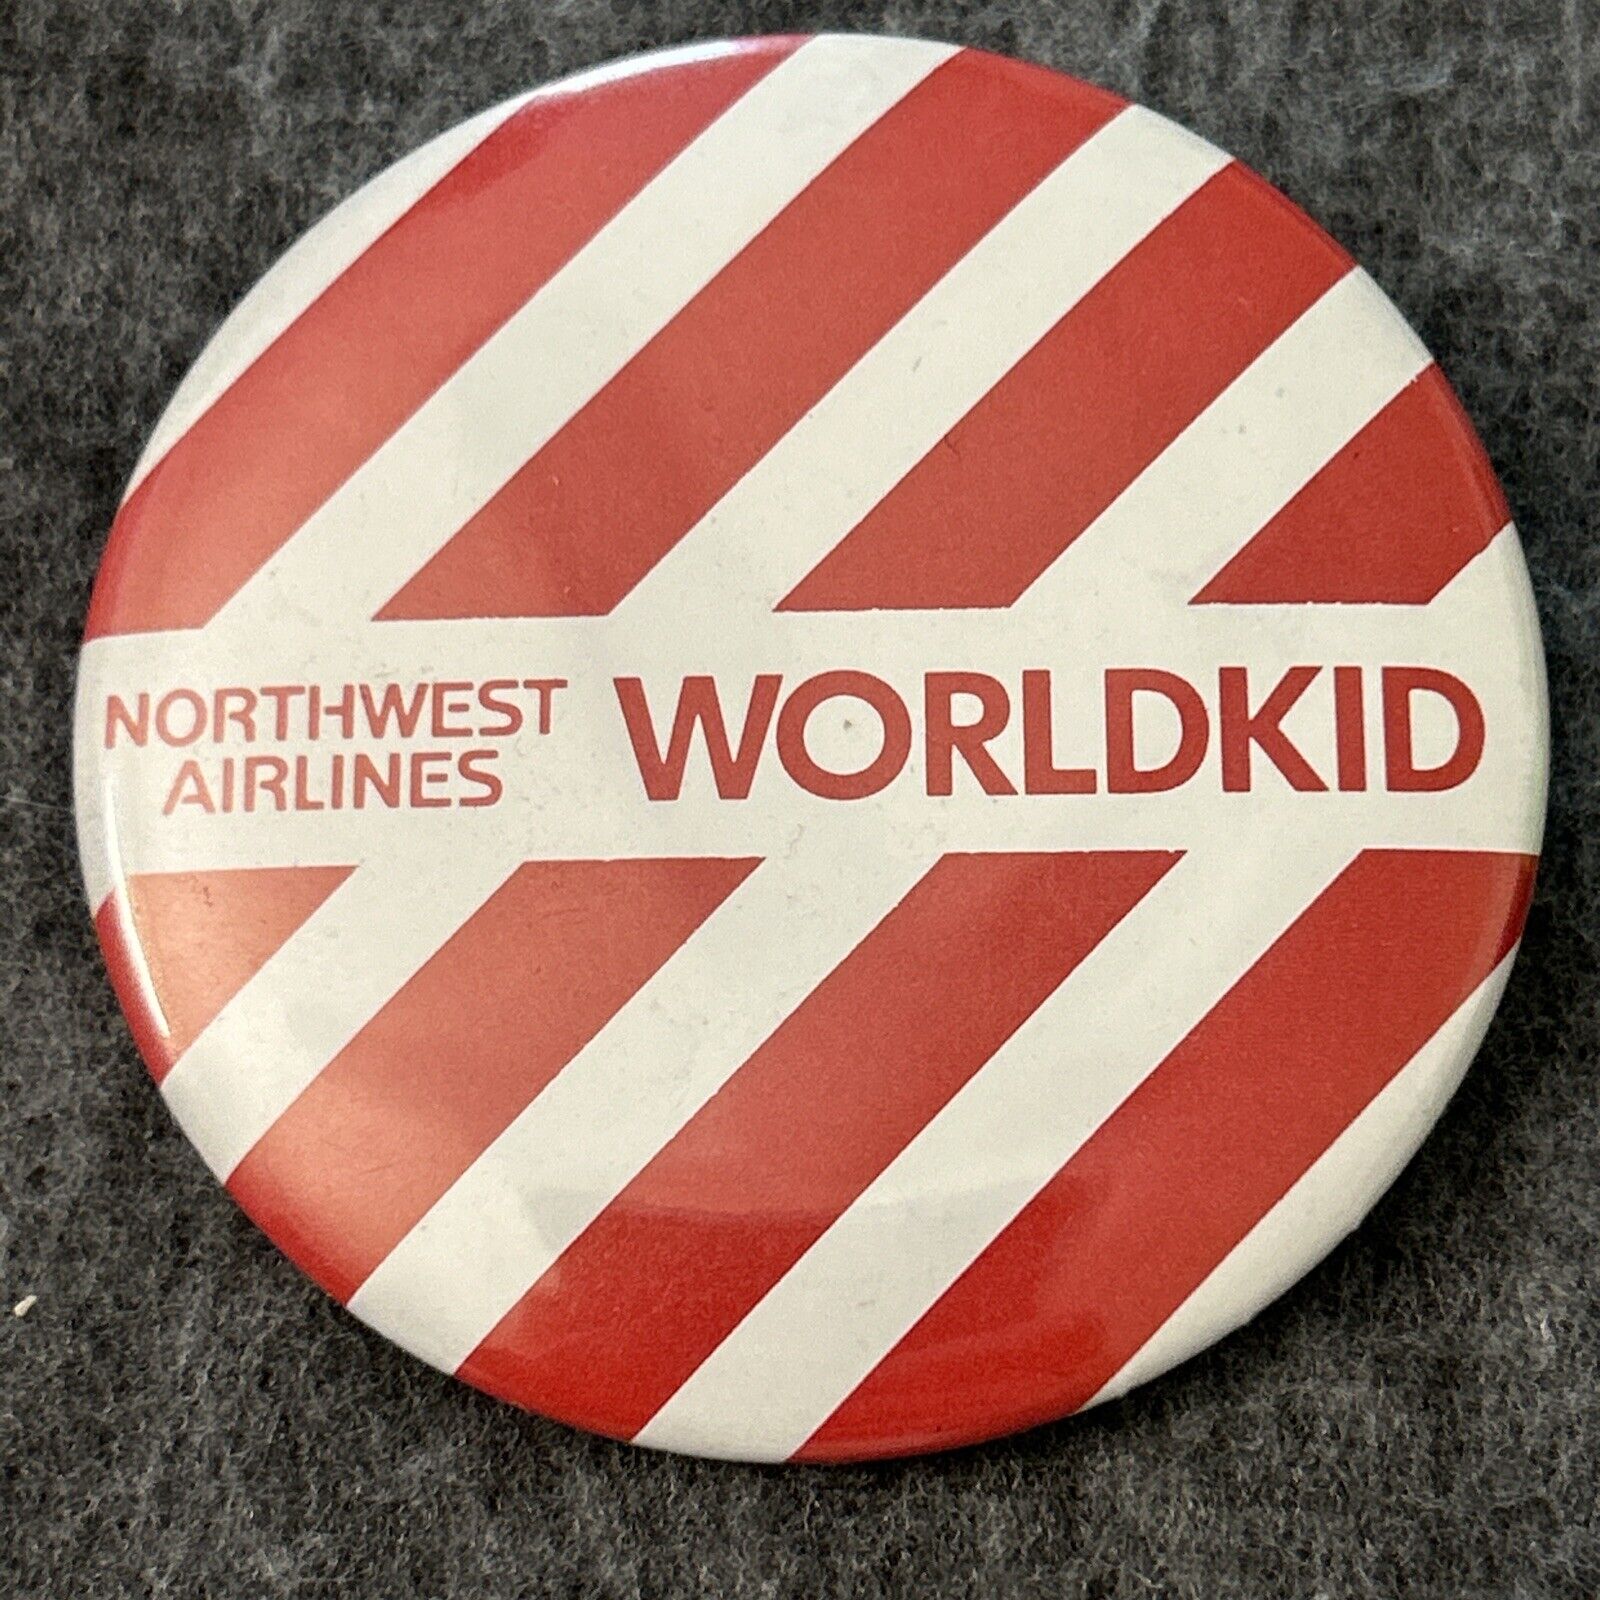 Northwest Airlines Worldkid 2.25” Pinback Button